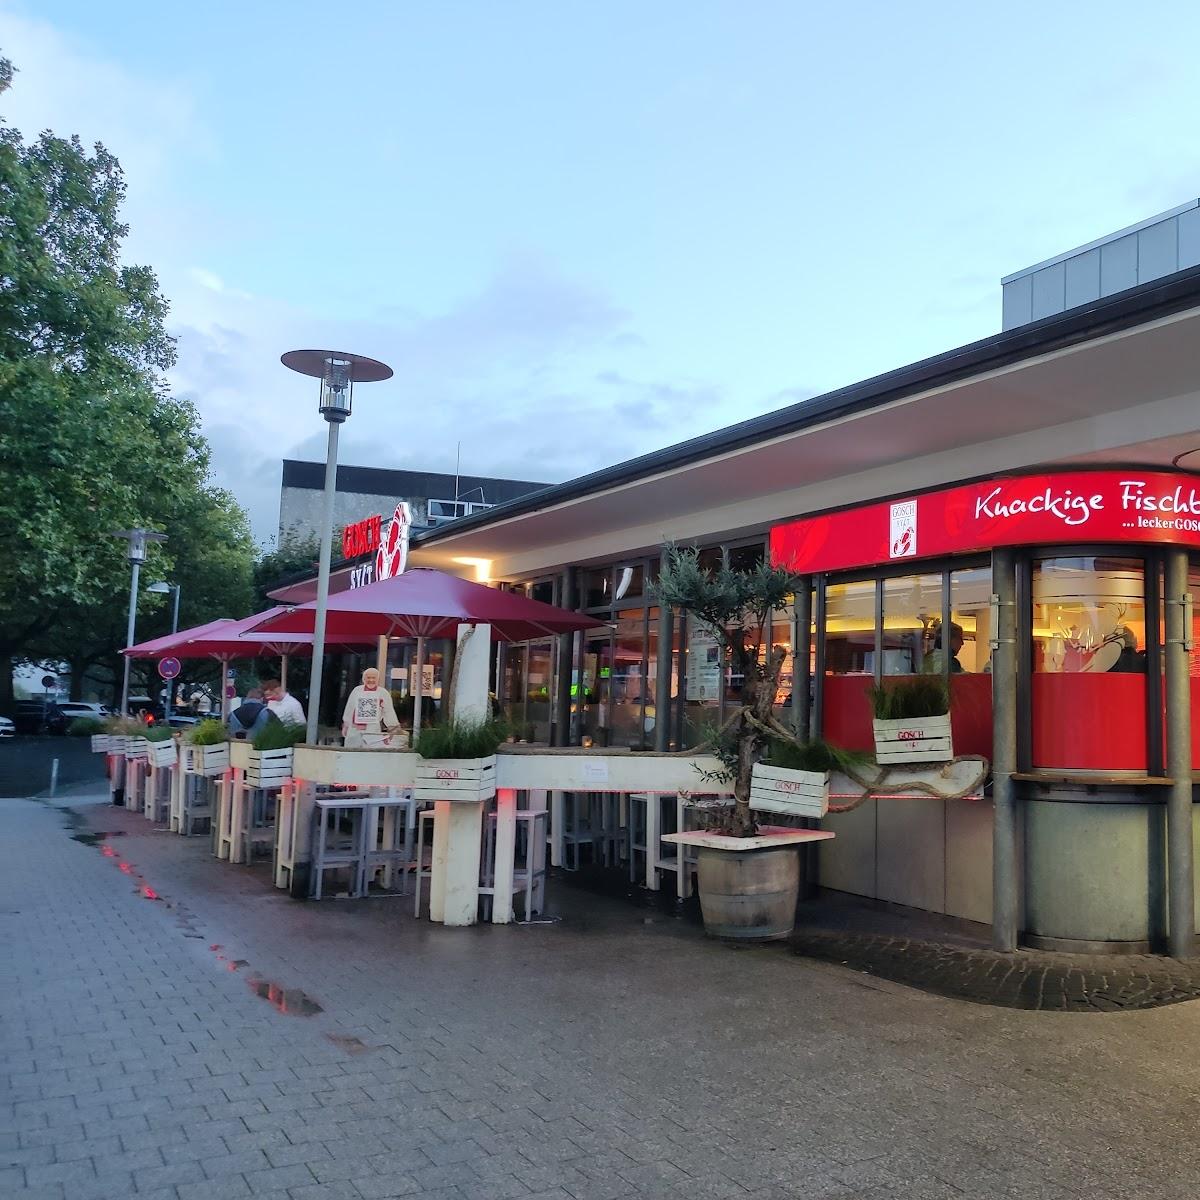 Restaurant "GOSCH an der Markthalle" in Hannover